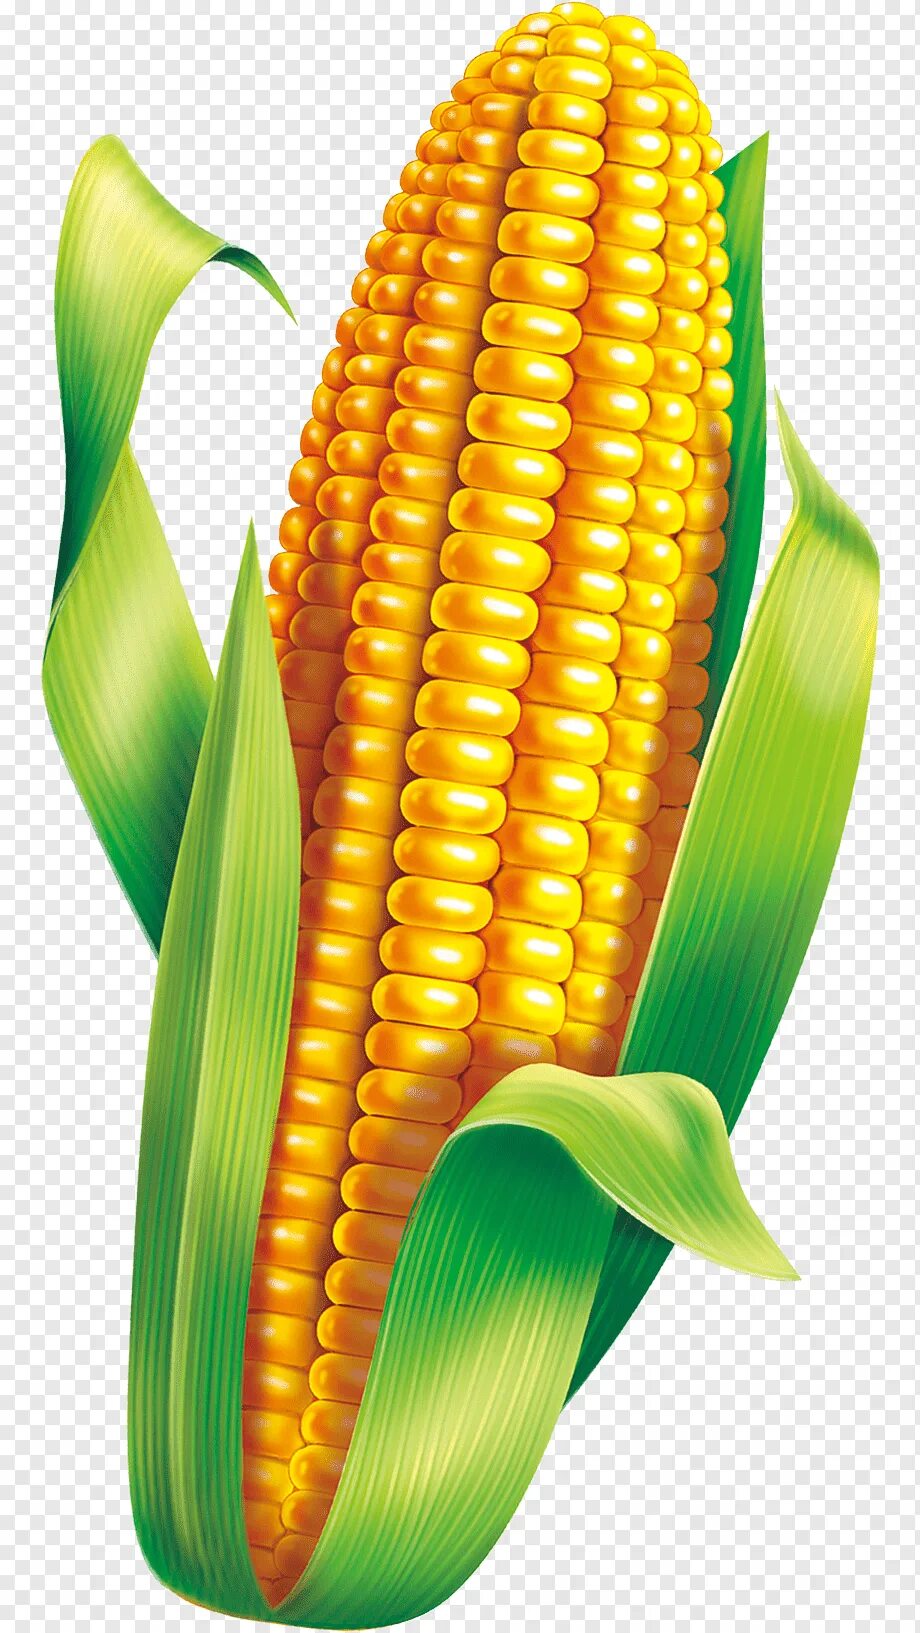 1 початок. Corn кукуруза. Кукурузный початок. Початок кукурузы вектор. Кукуруза это овощ.